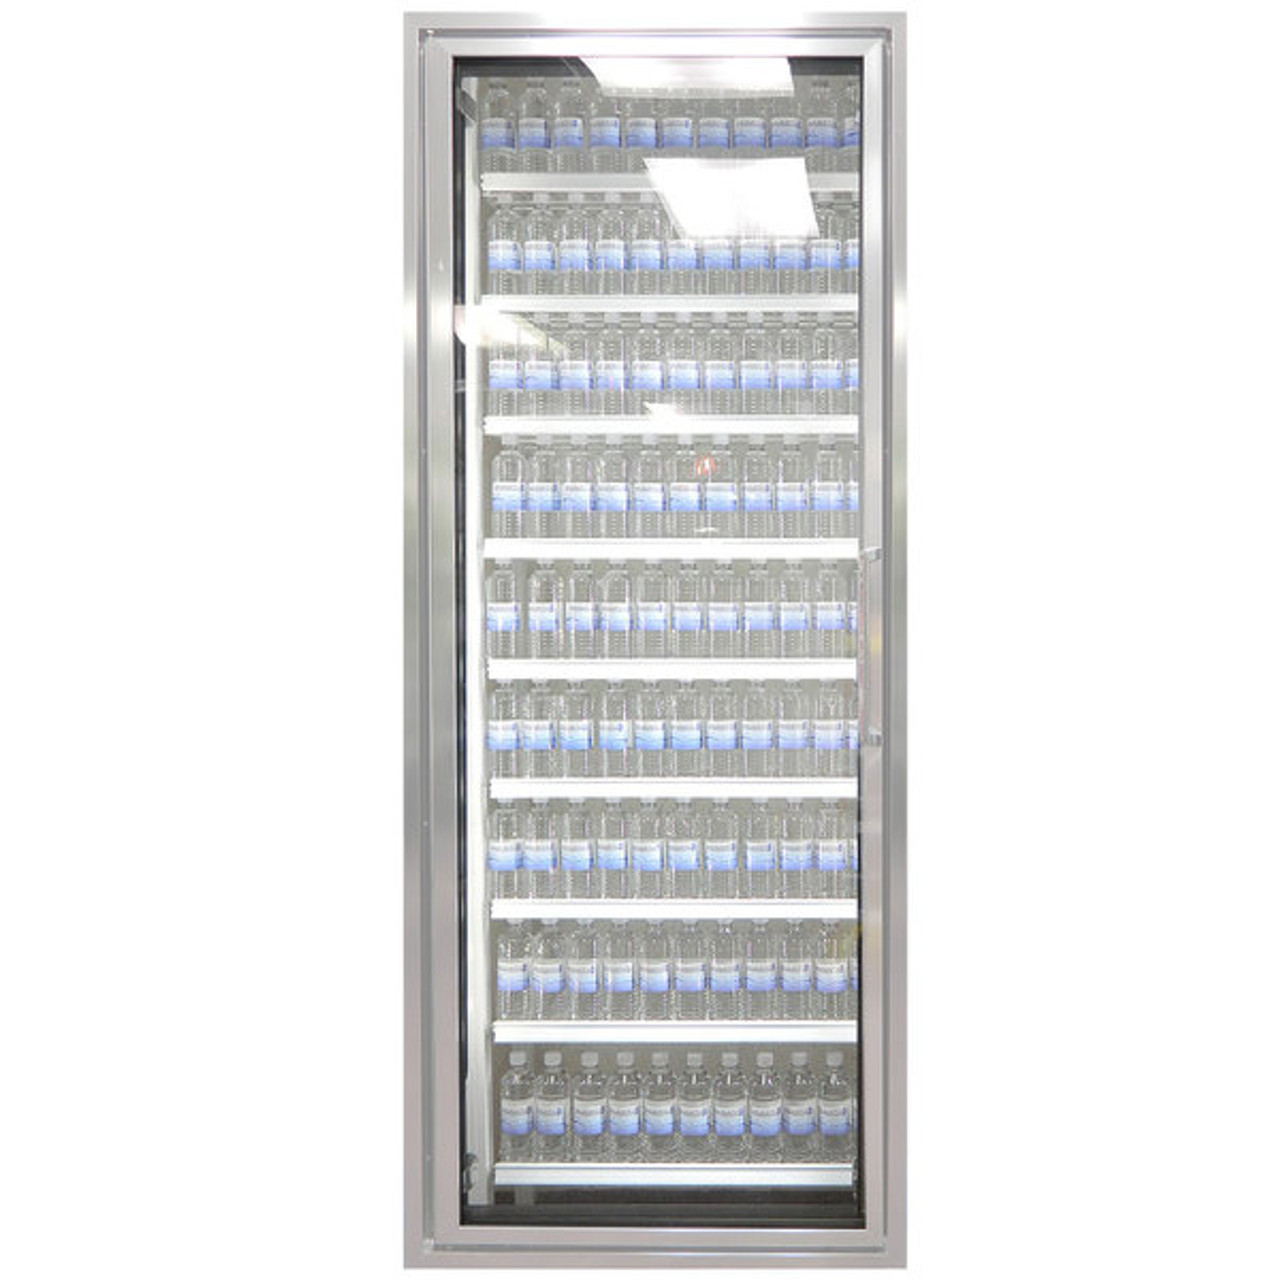 Classic Plus 26" x 72" Walk-In Freezer Merchandiser Door with Shelving - Anodized Satin Silver, Left Hinge-Styleline CL2672-LT 